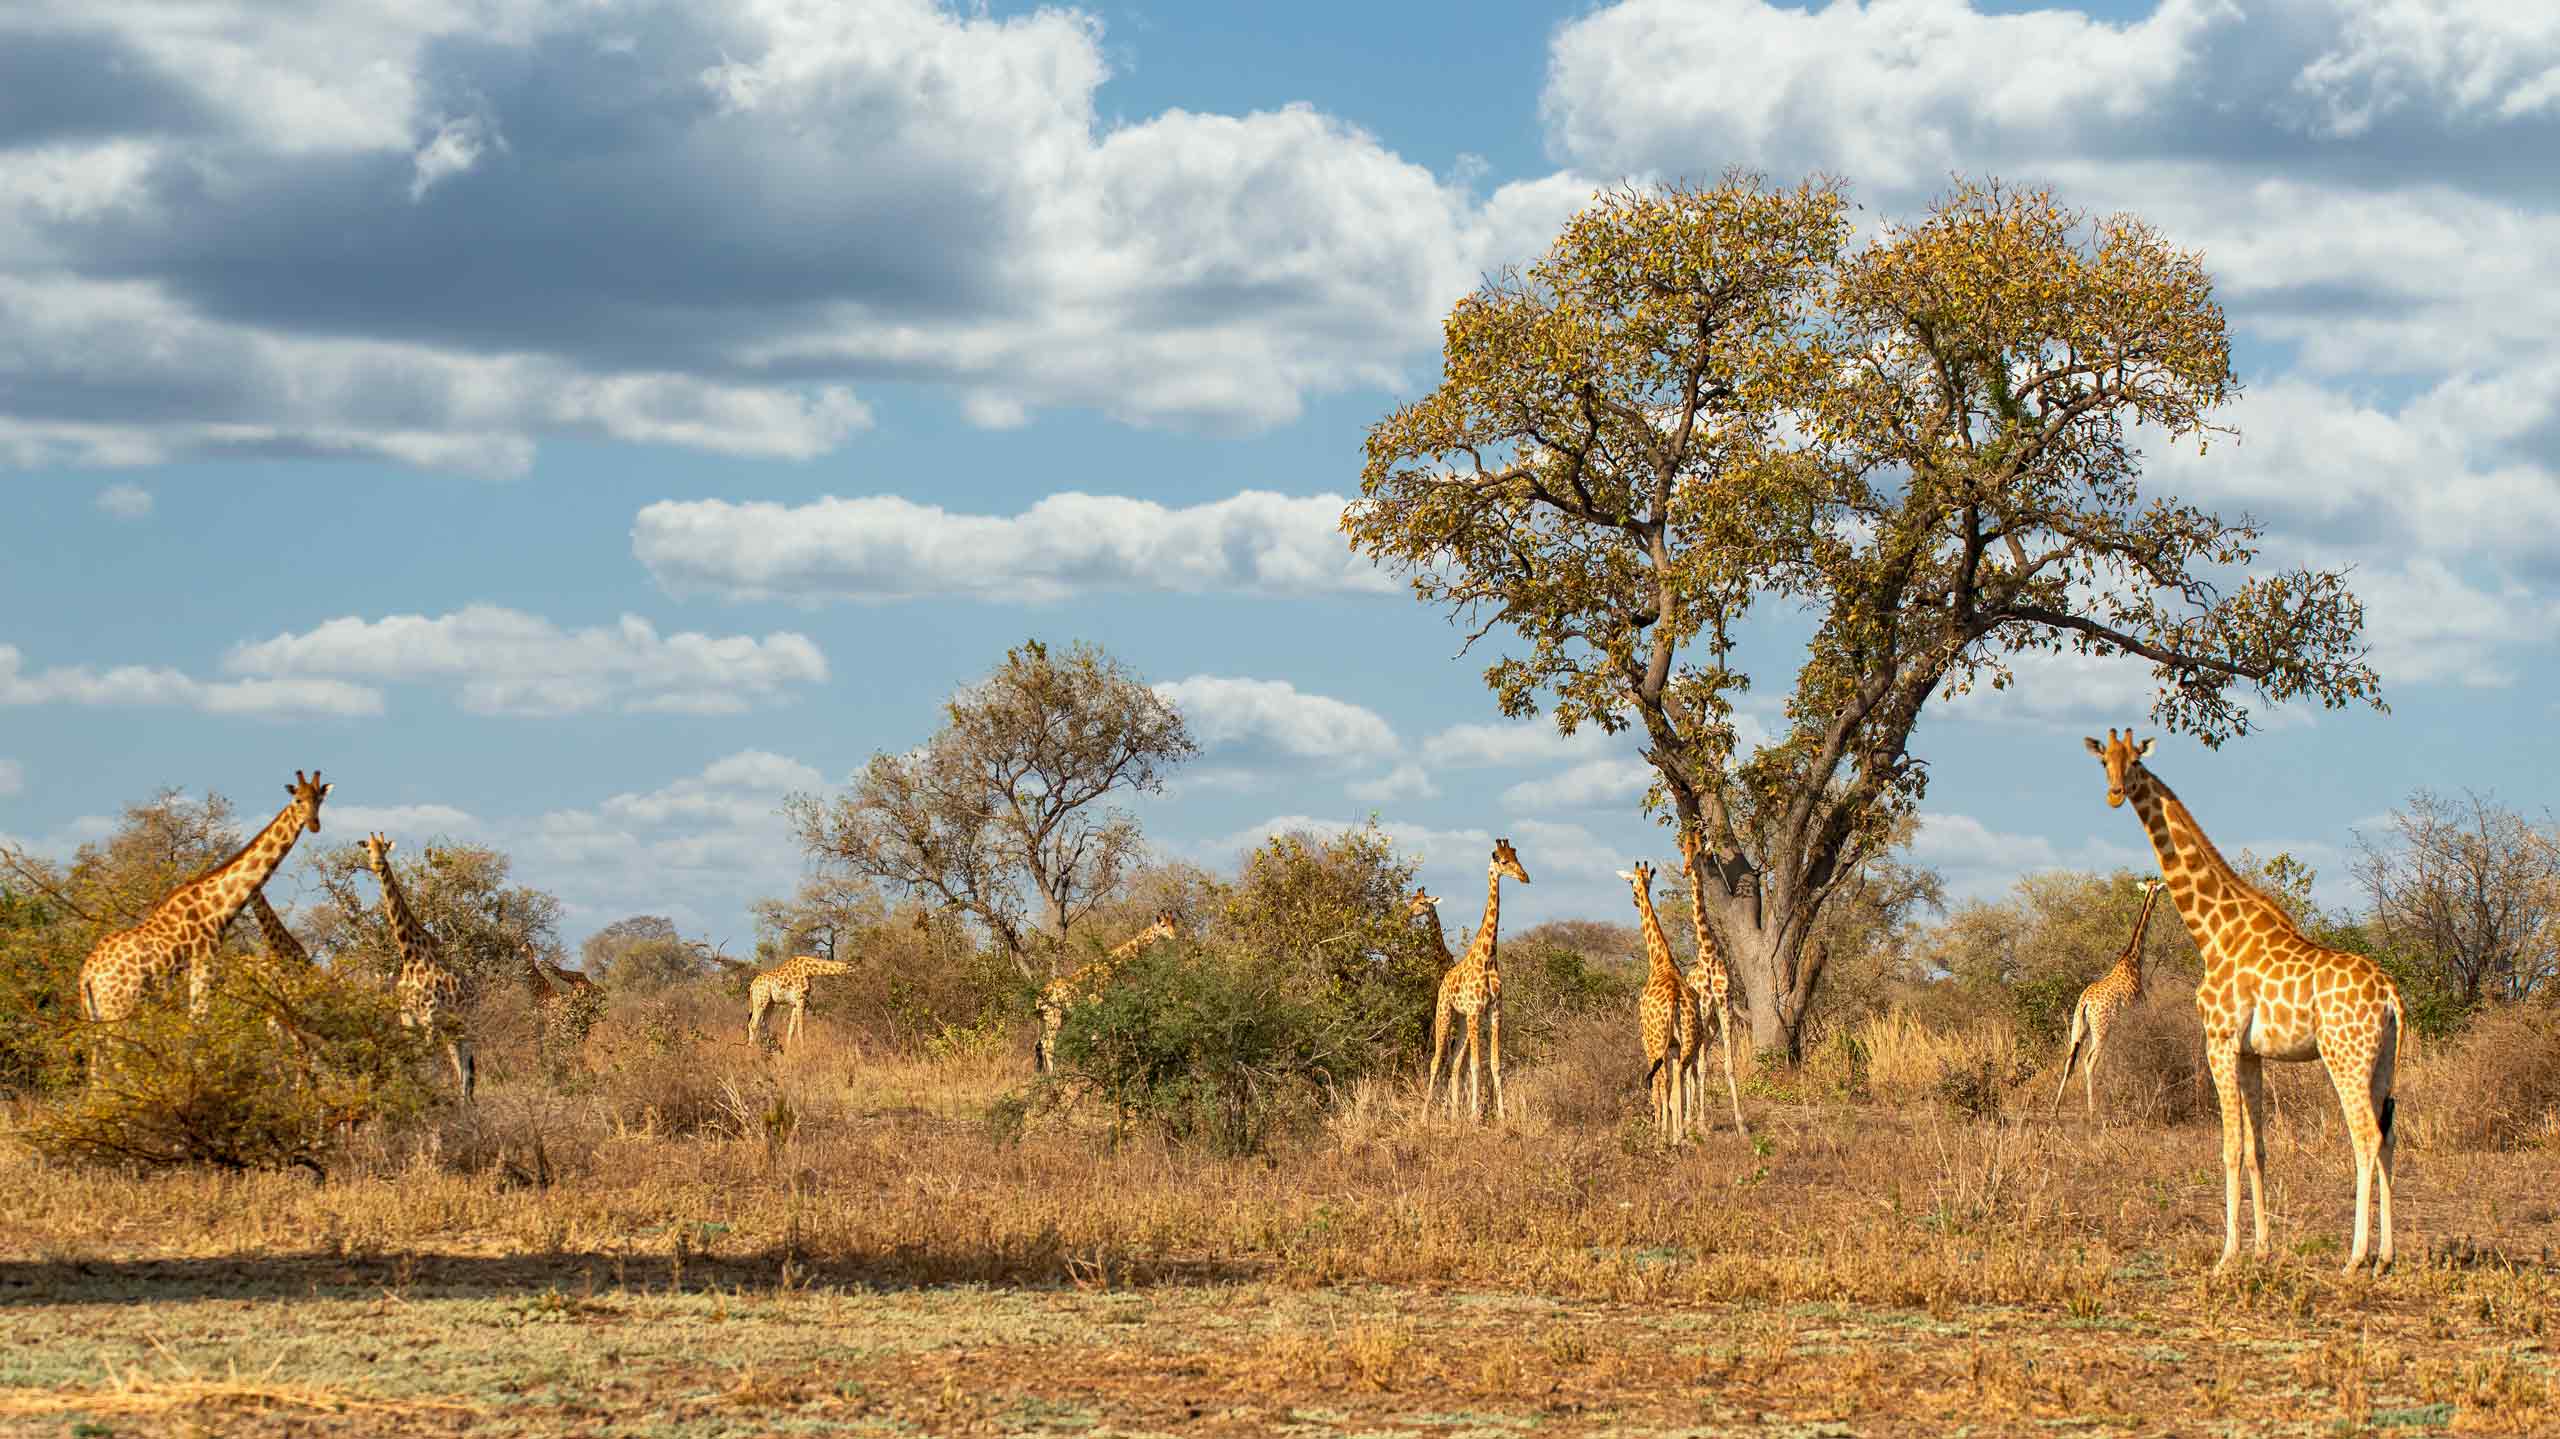 Rare Kordofan giraffe in Zakouma National Park in Chad